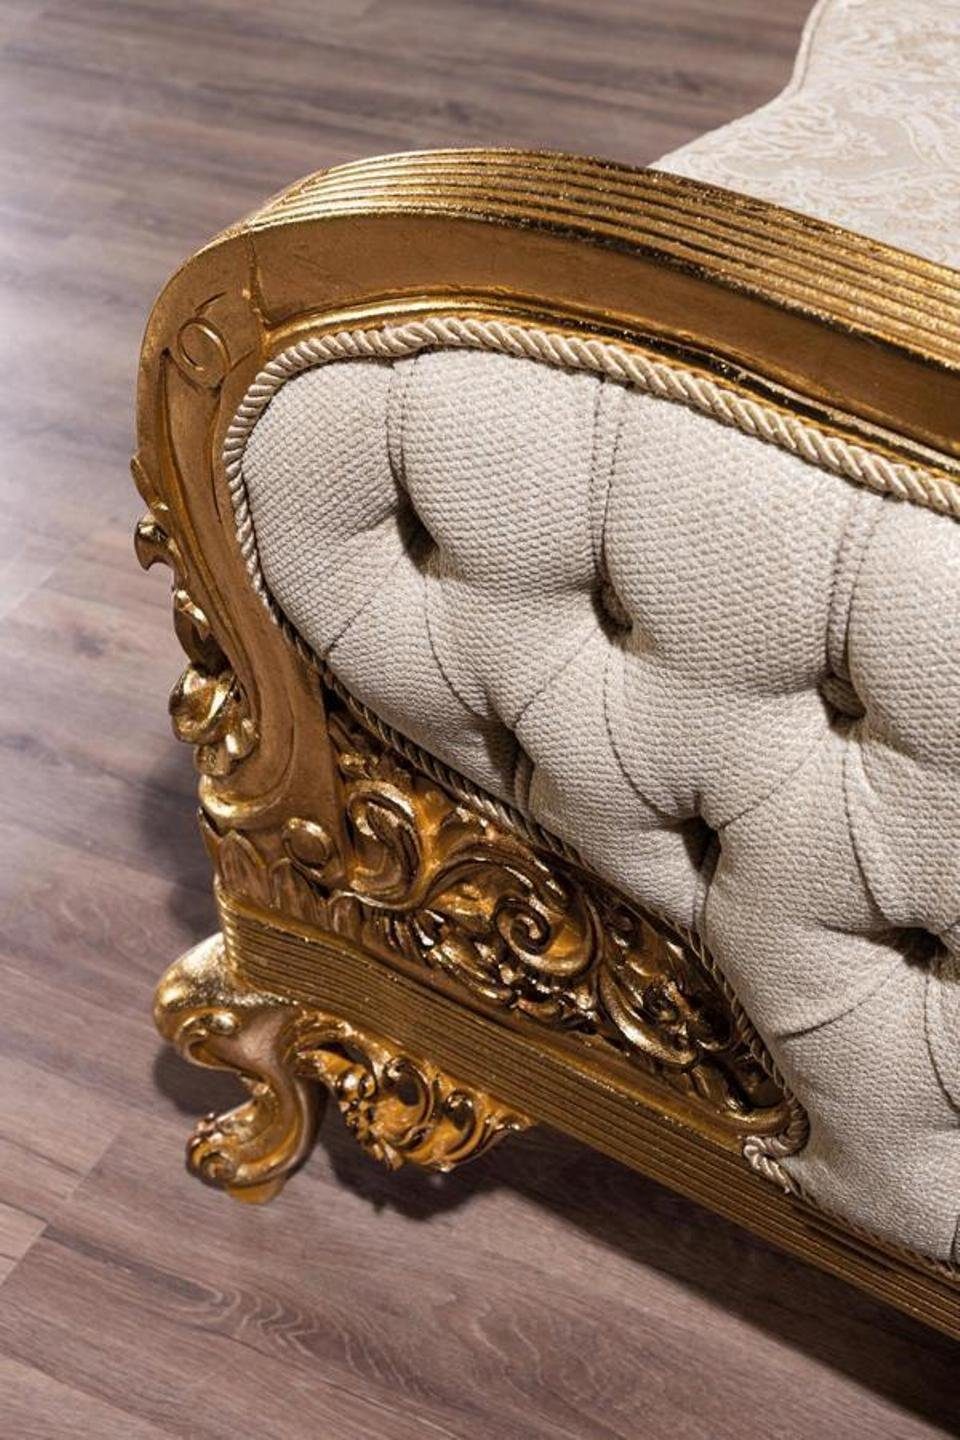 Sofagarnitur Couchtisch, Sessel 3 Sitzer / Goldene / Sofa, Polster Couch JVmoebel 3+1 Möbel Sofa Couchtisch Klassische